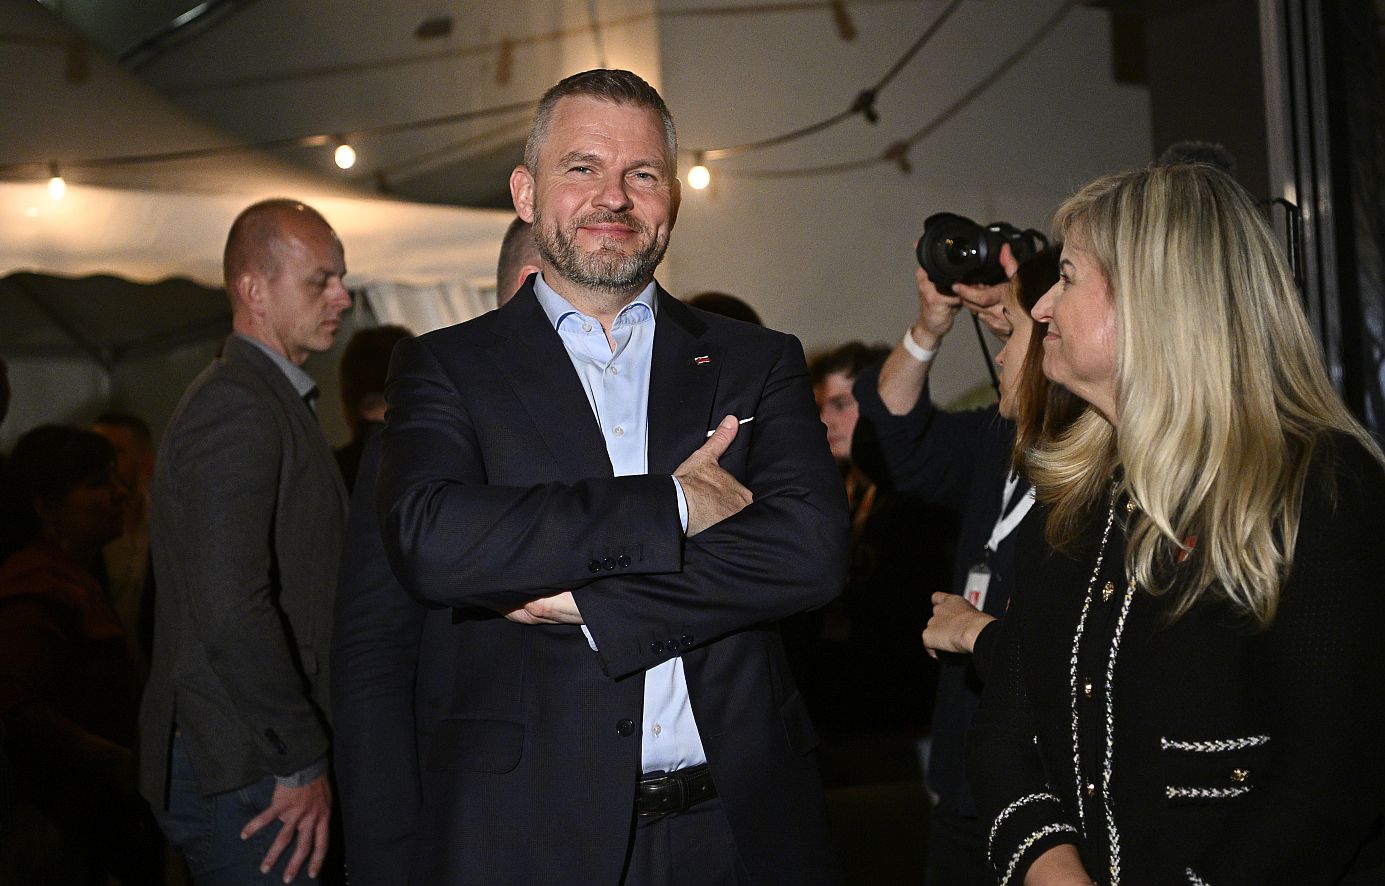 Ο Πέτερ Πελεγκρίνι είναι ο νικητής των προεδρικών εκλογών στη Σλοβακία